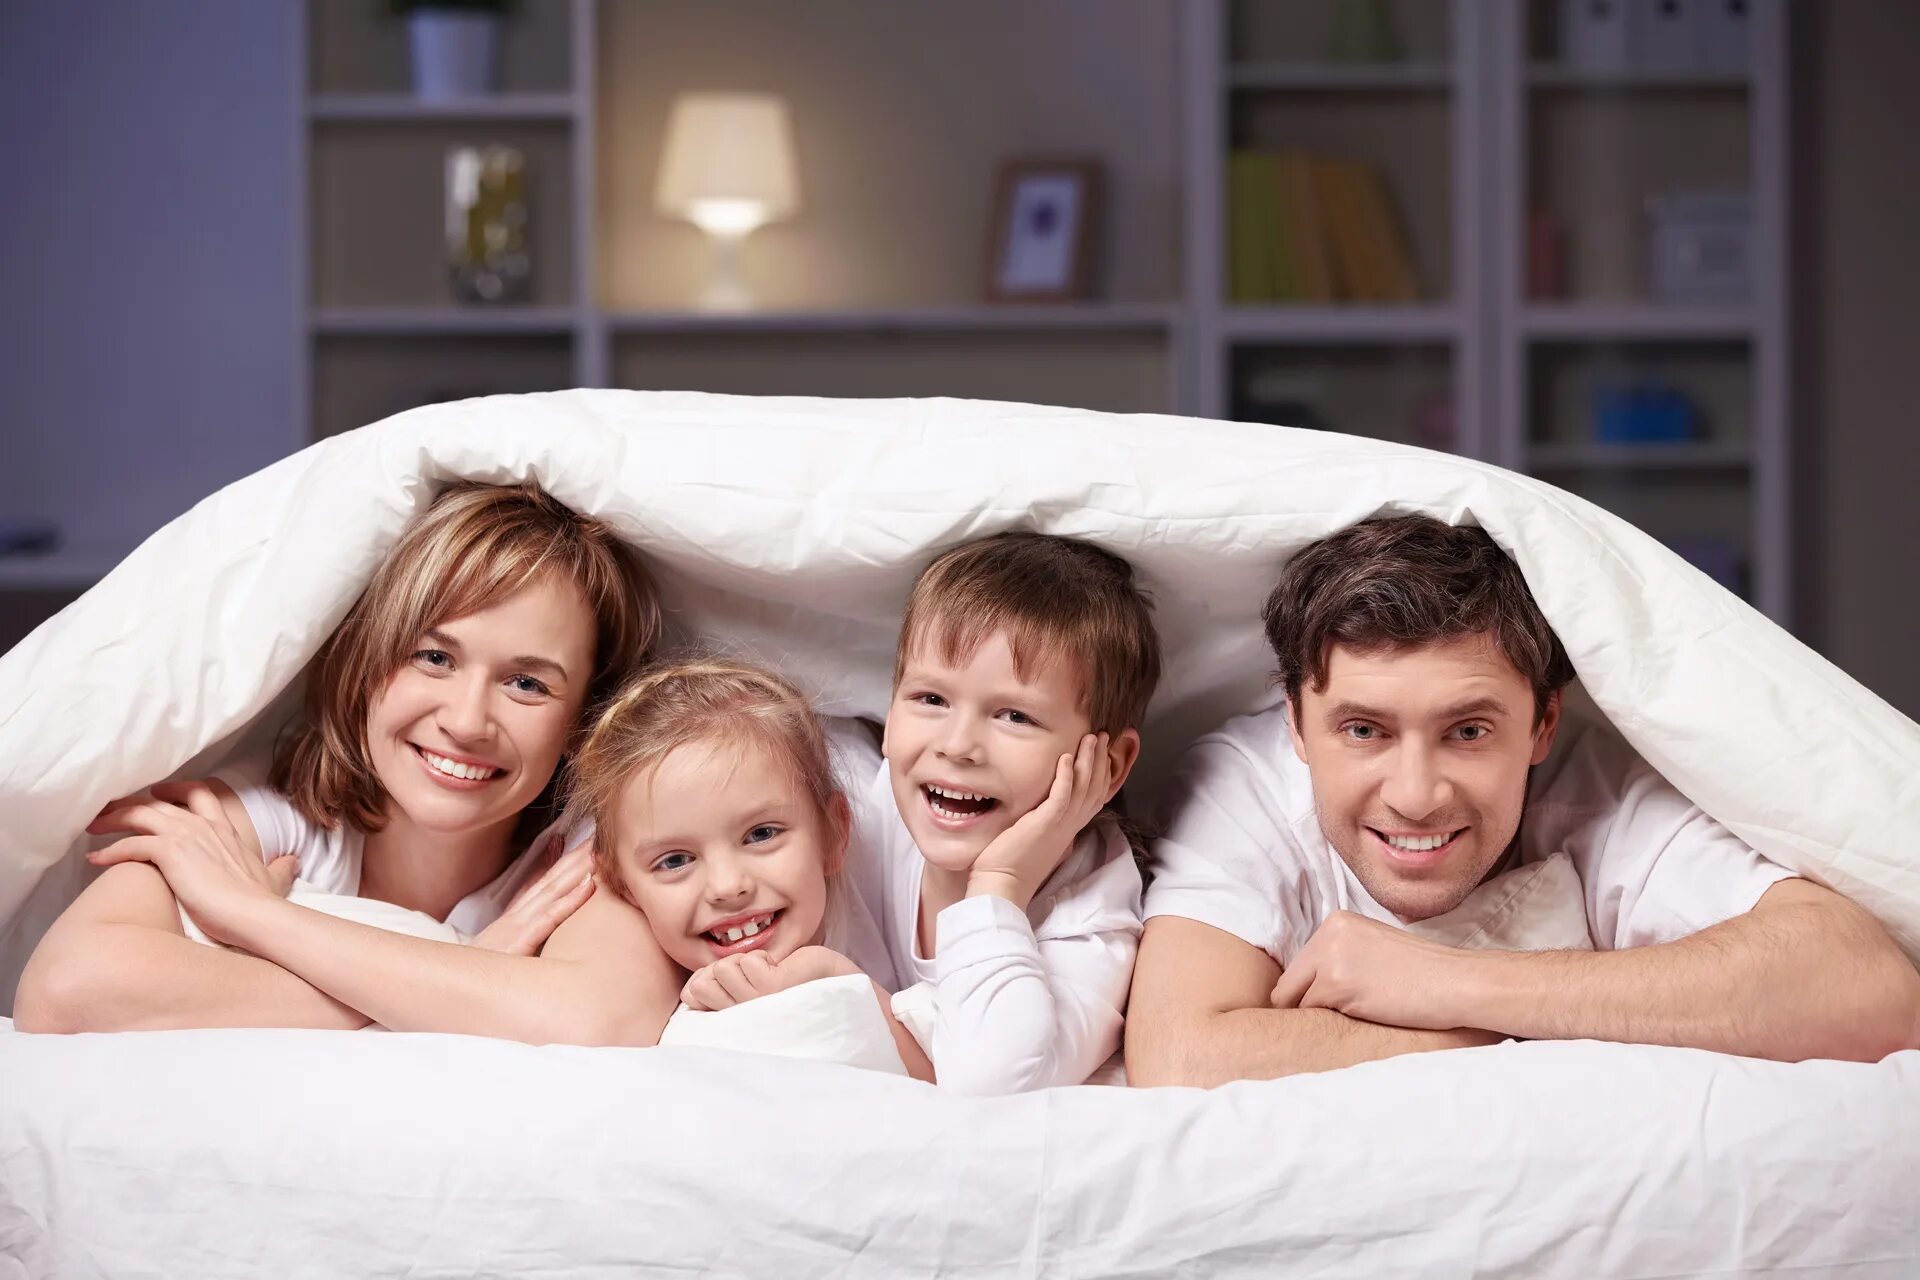 Семейная пара в спальне. Семейная фотосессия. Семьи с детьми в гостинице. Ребенок в семье. Счастливая семья в постели.